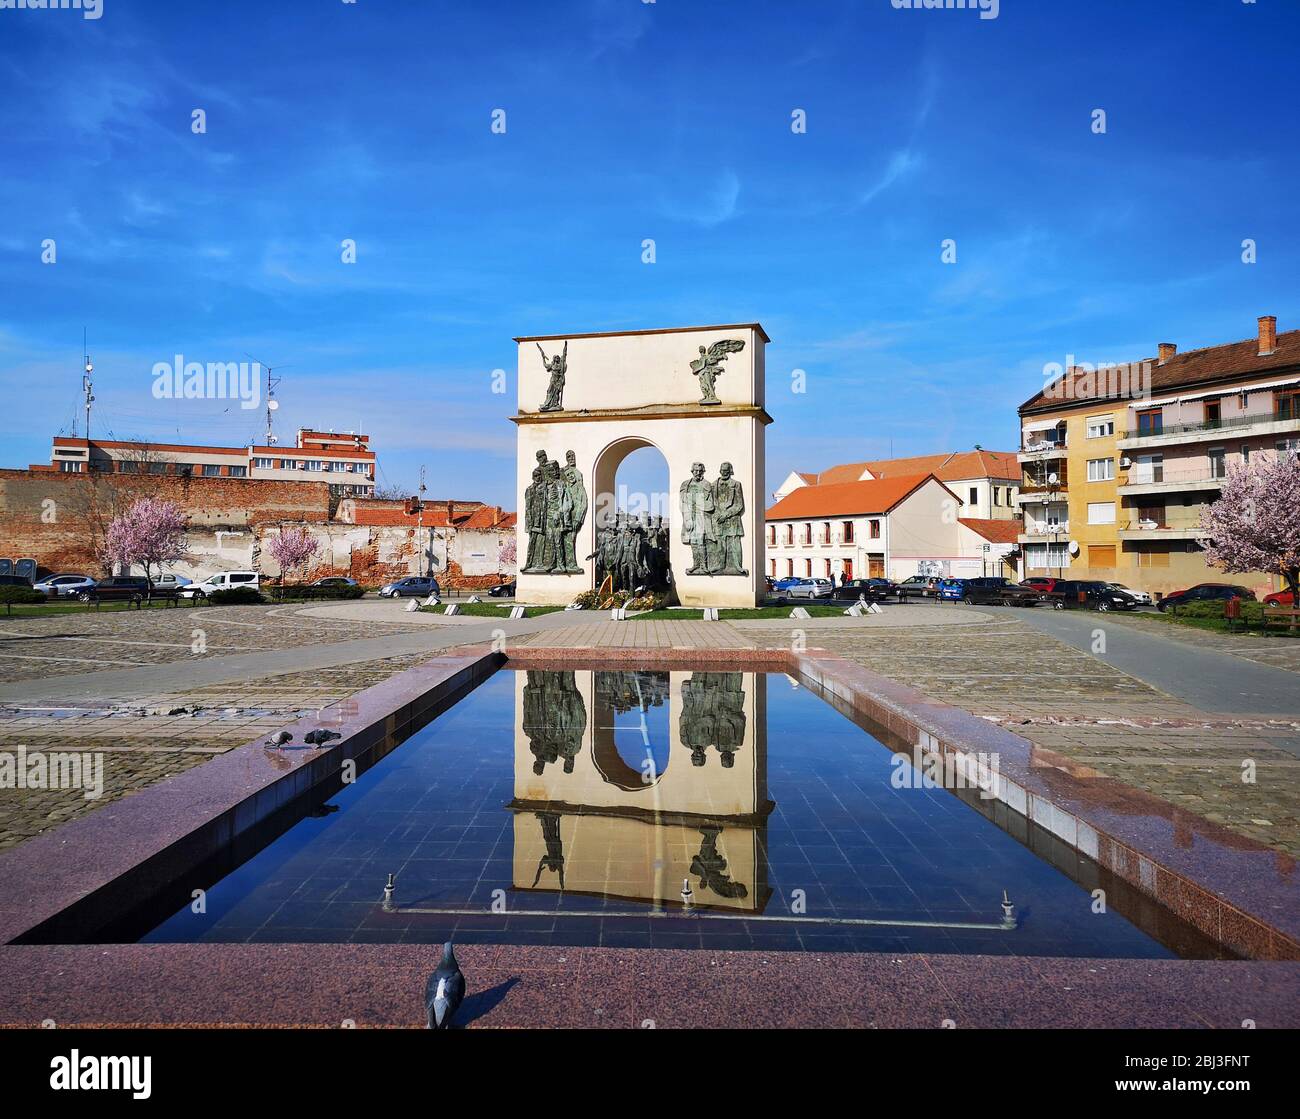 Vista del paisaje con arco monumento reflejado en la fuente de agua en una plaza de la ciudad, restaurante europeo arquietetcural punto de referencia en Arad, Rumania, tomado el 03/ Foto de stock